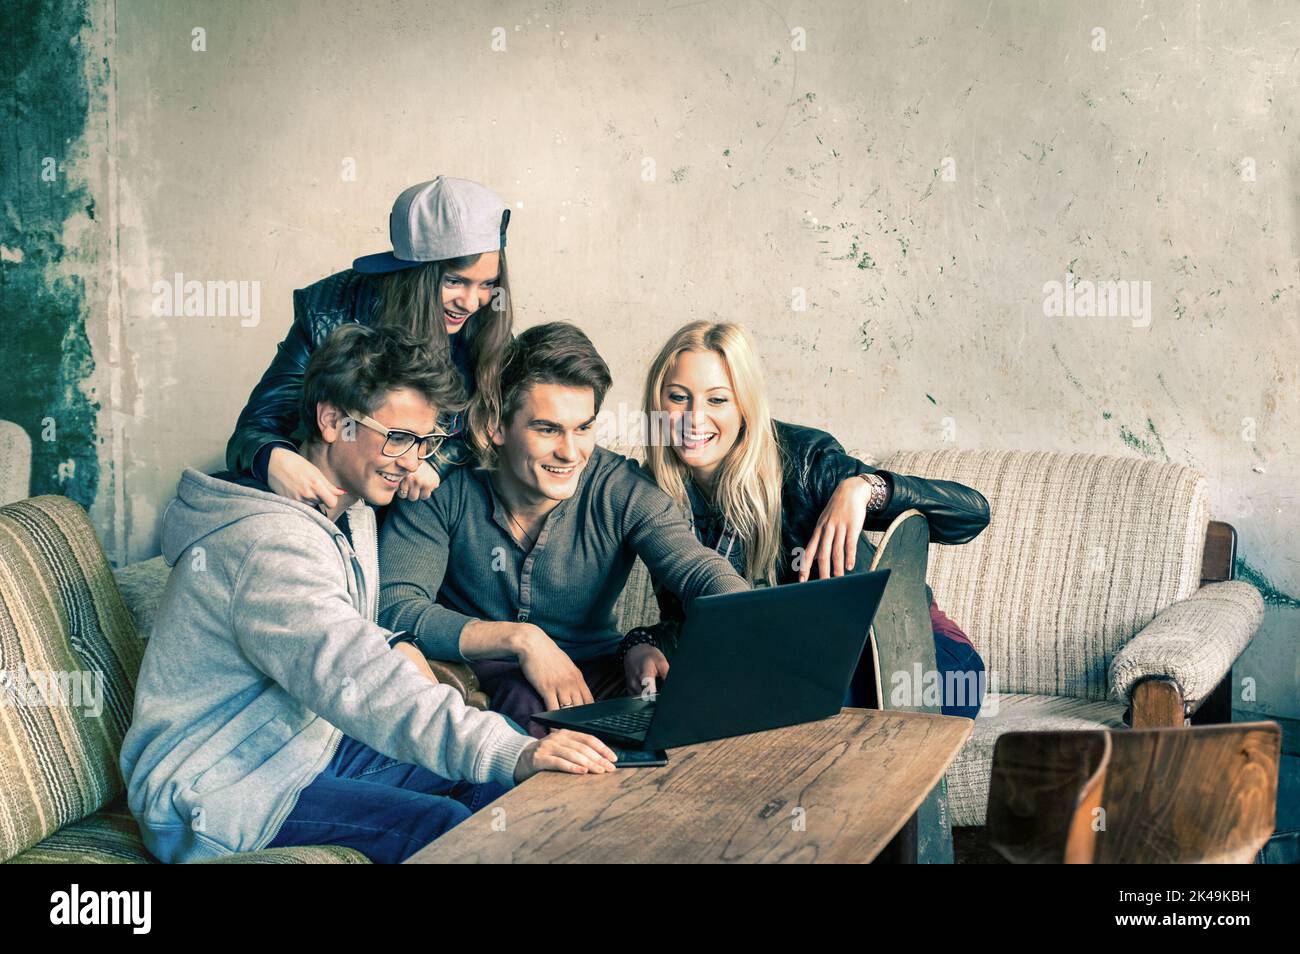 Gruppe von jungen Hipster besten Freunden mit Computer-Laptop in städtischen alternativen Ort - Konzept der Freundschaft und Spaß mit neuen Trends und Technologie Stockfoto